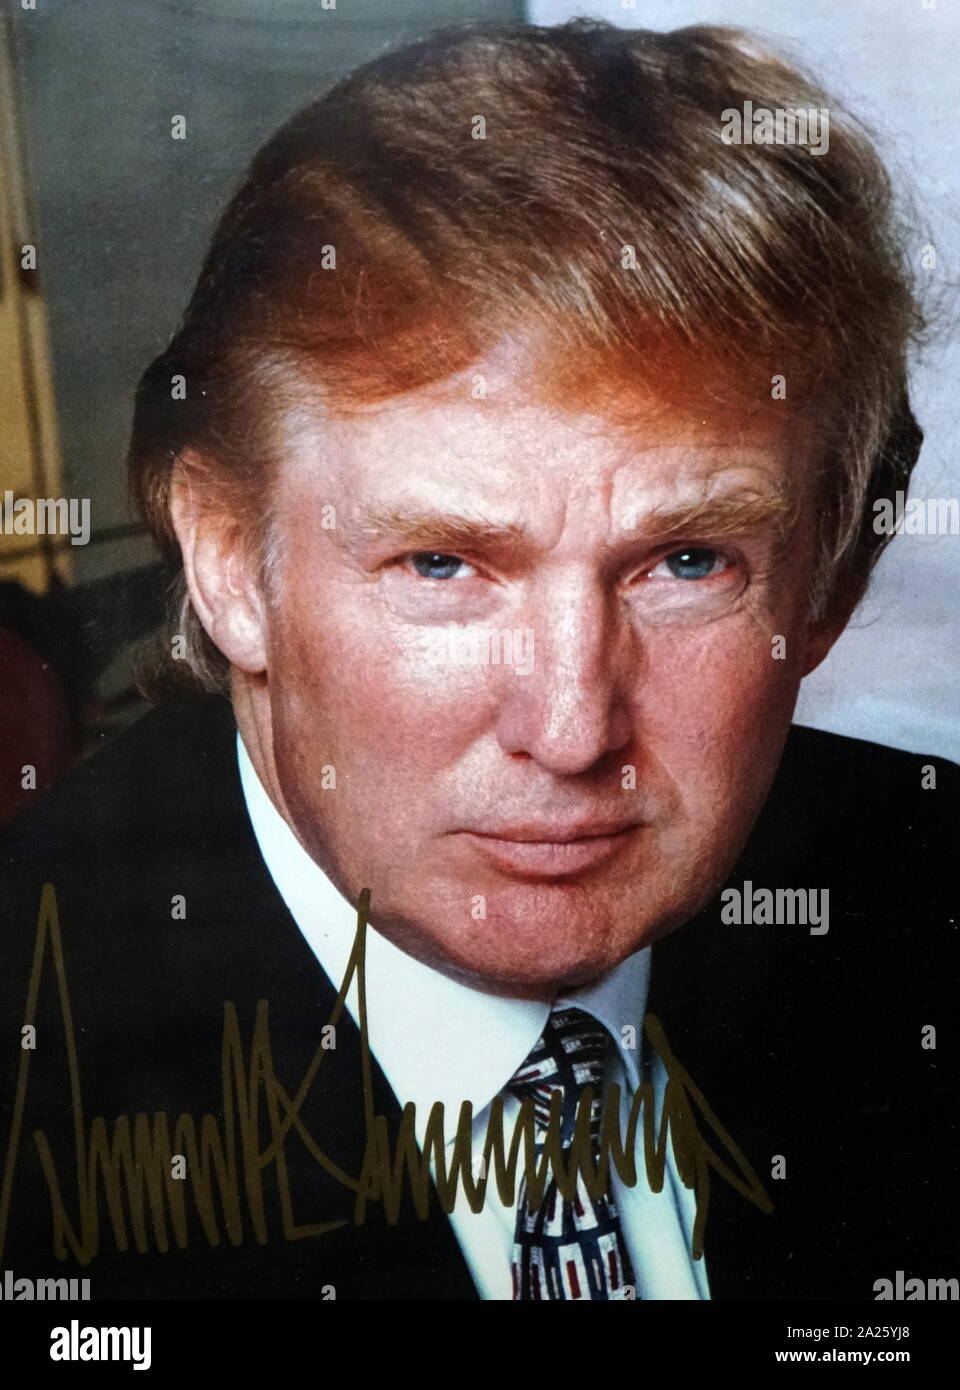 Ein signiertes Bild von Donald Trump. Donald John Trump (*1946) ein US-amerikanischer Politiker, Geschäftsmann, TV-Persönlichkeit und 45. Präsident der Vereinigten Staaten von Amerika. Stockfoto